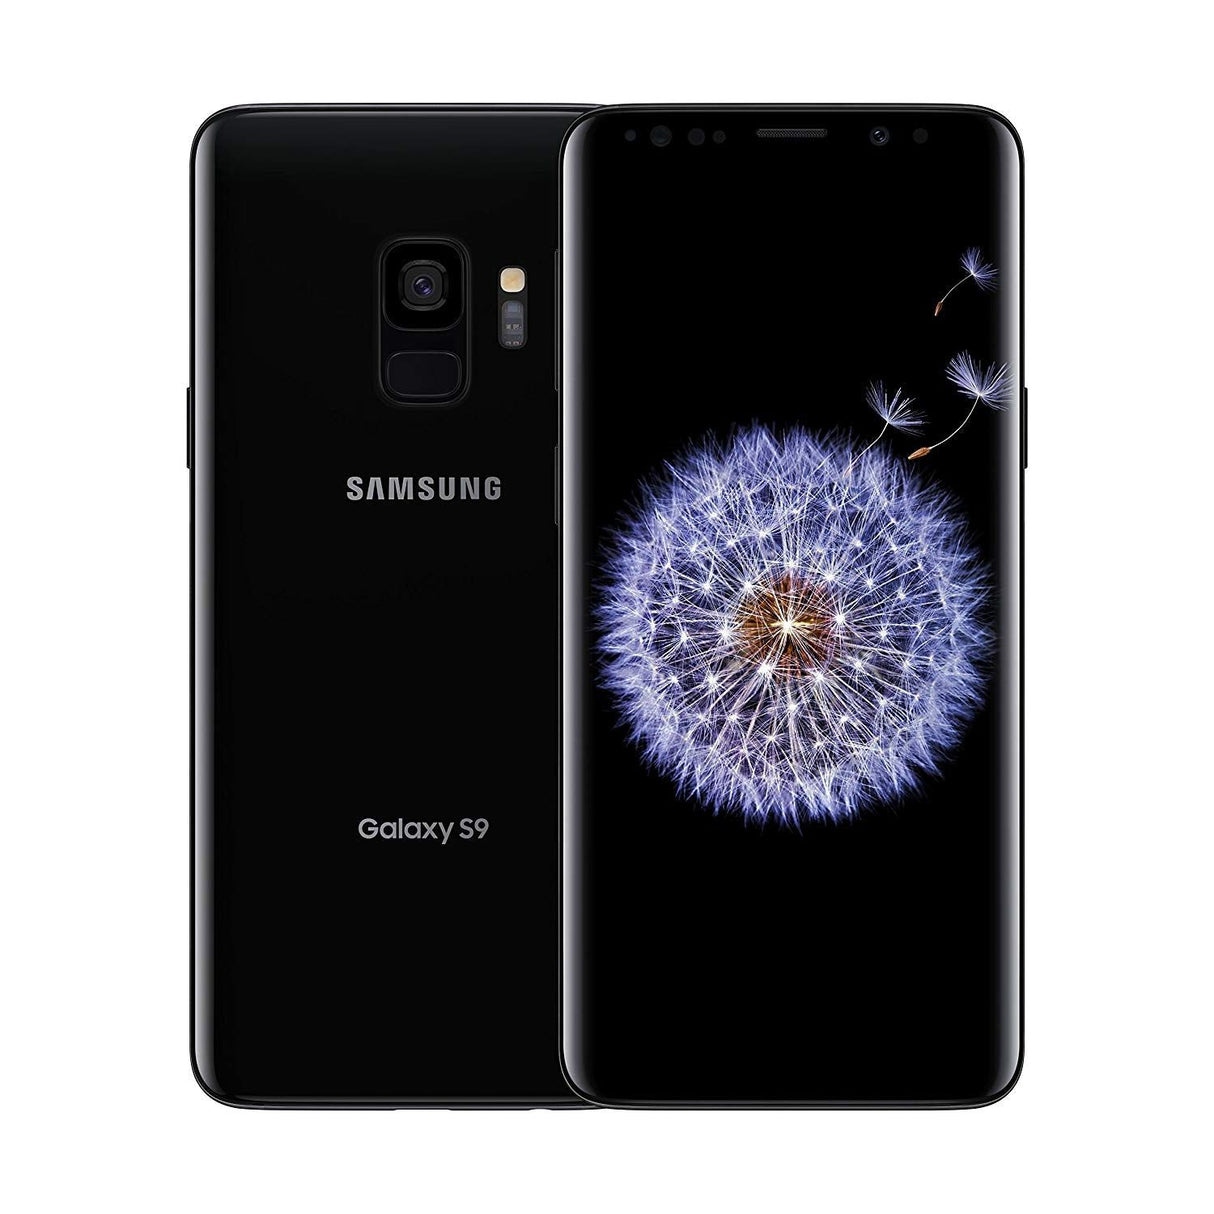 Samsung Galaxy S9 - 64 GB - Midnight Black - Unlocked - CDMA/GSM